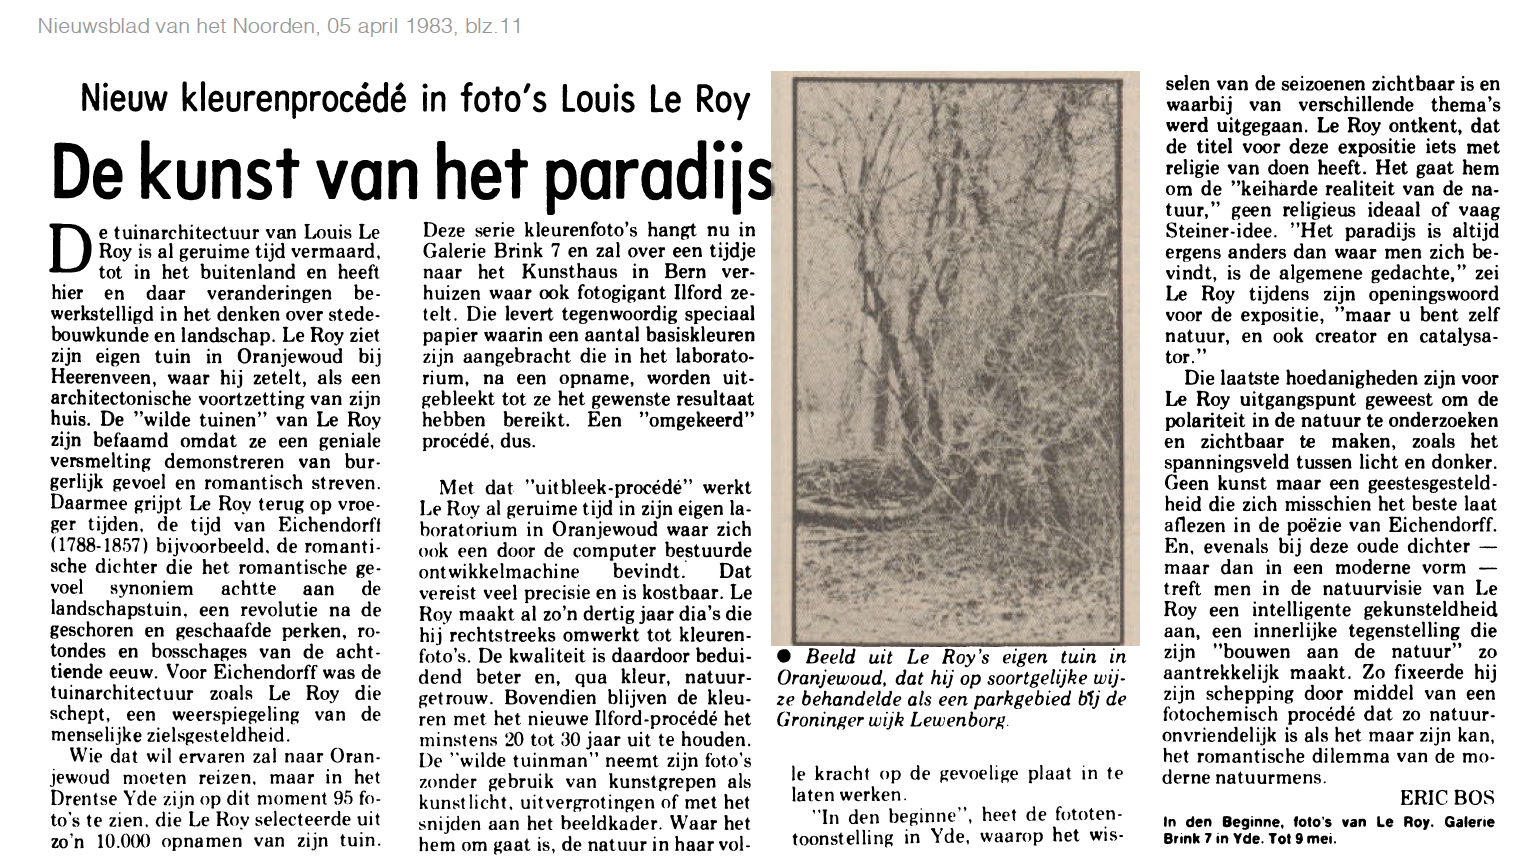 19830405_De_kunst_van_het_paradijs.png